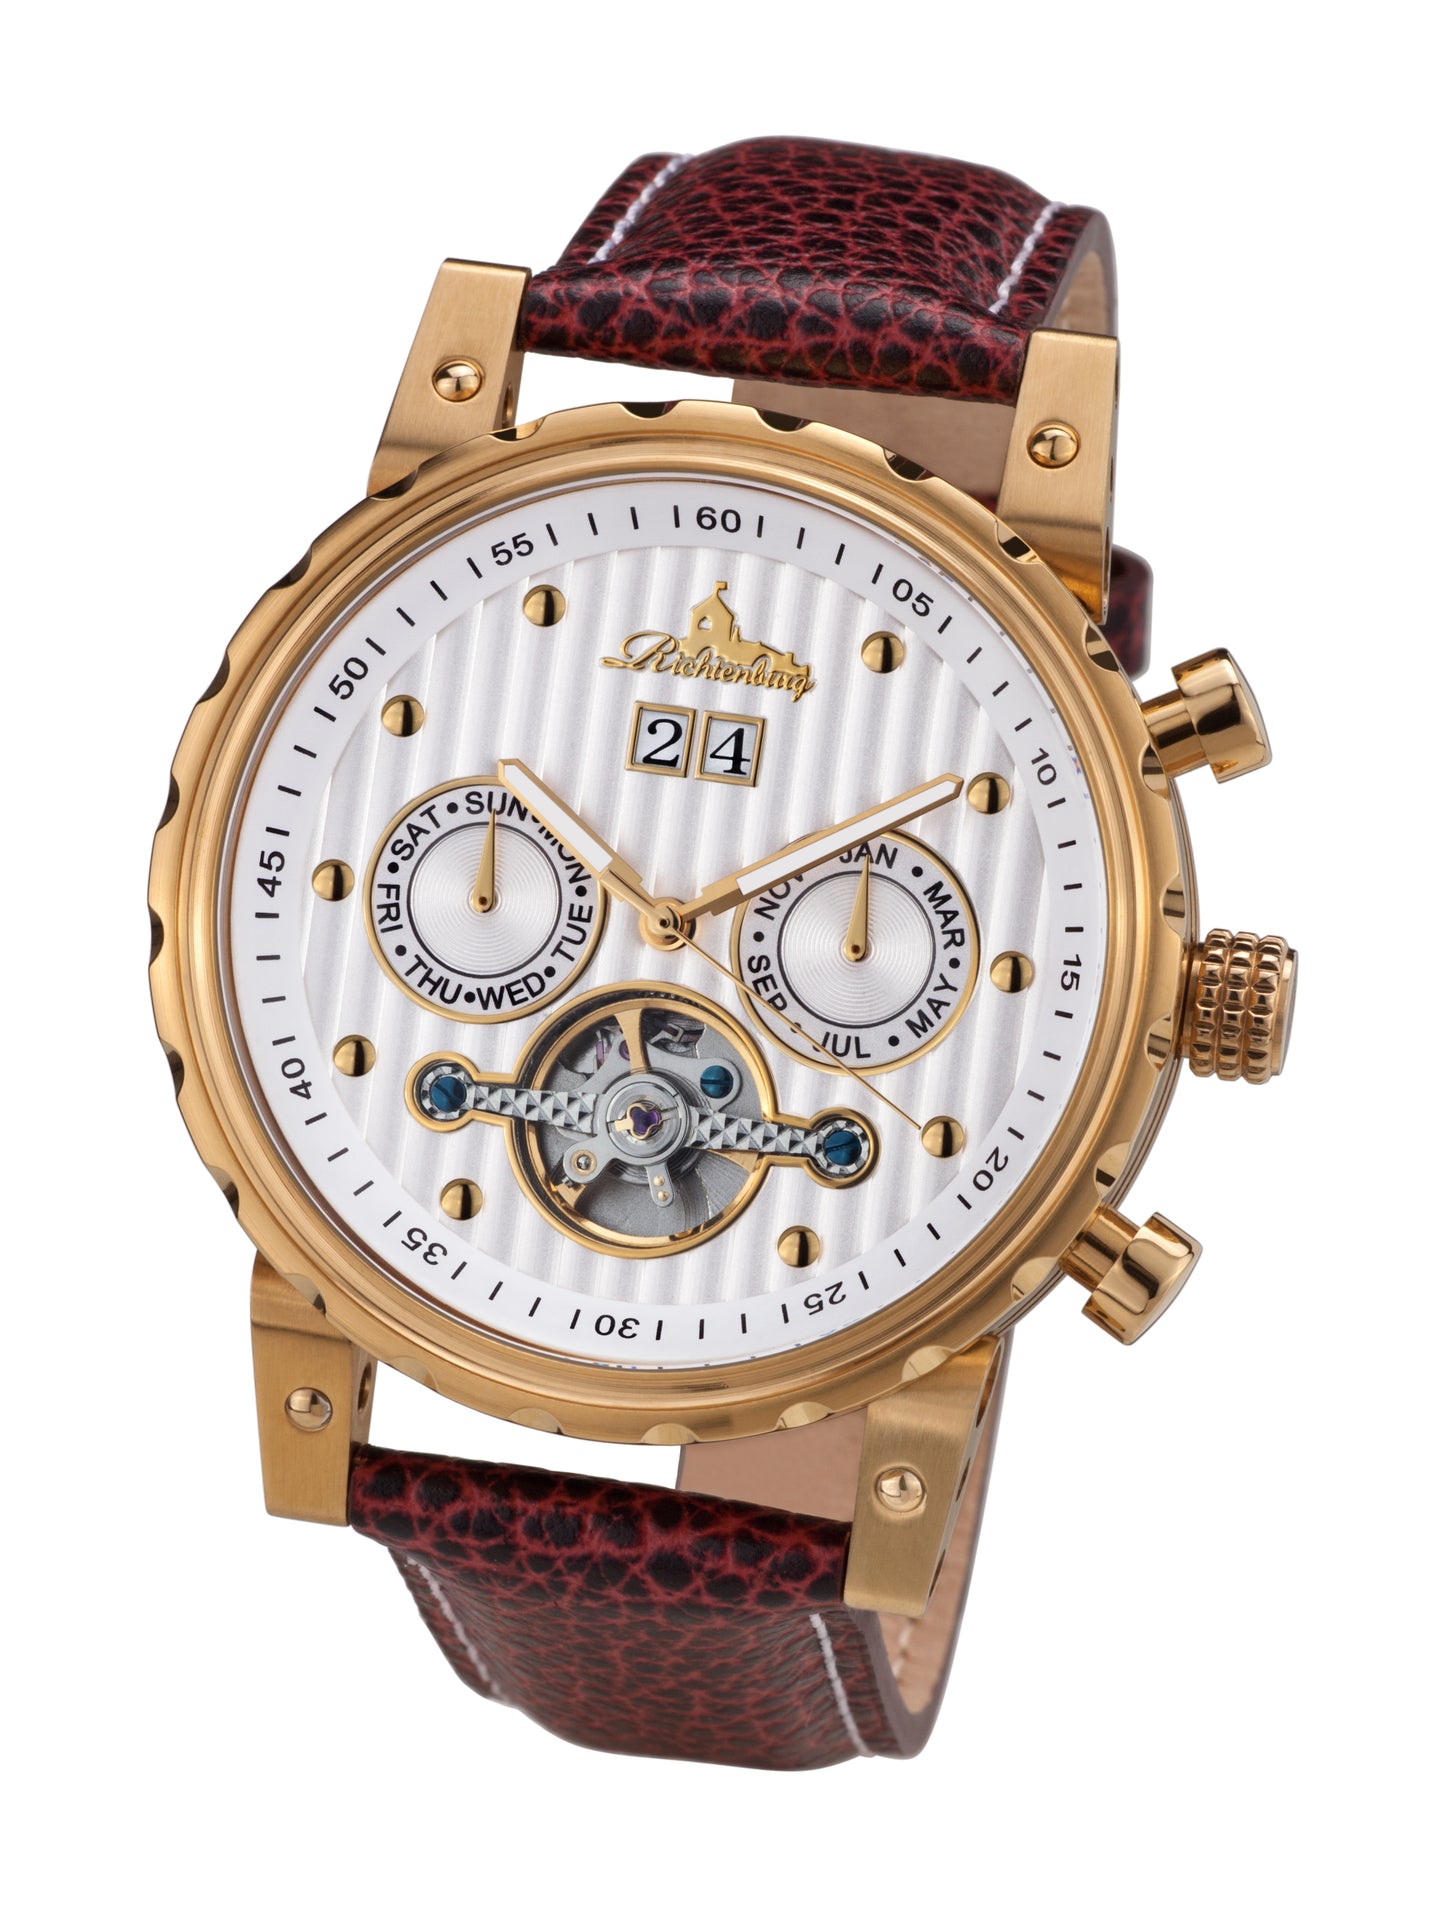 Automatic watches — Newport — Richtenburg — gold IP white